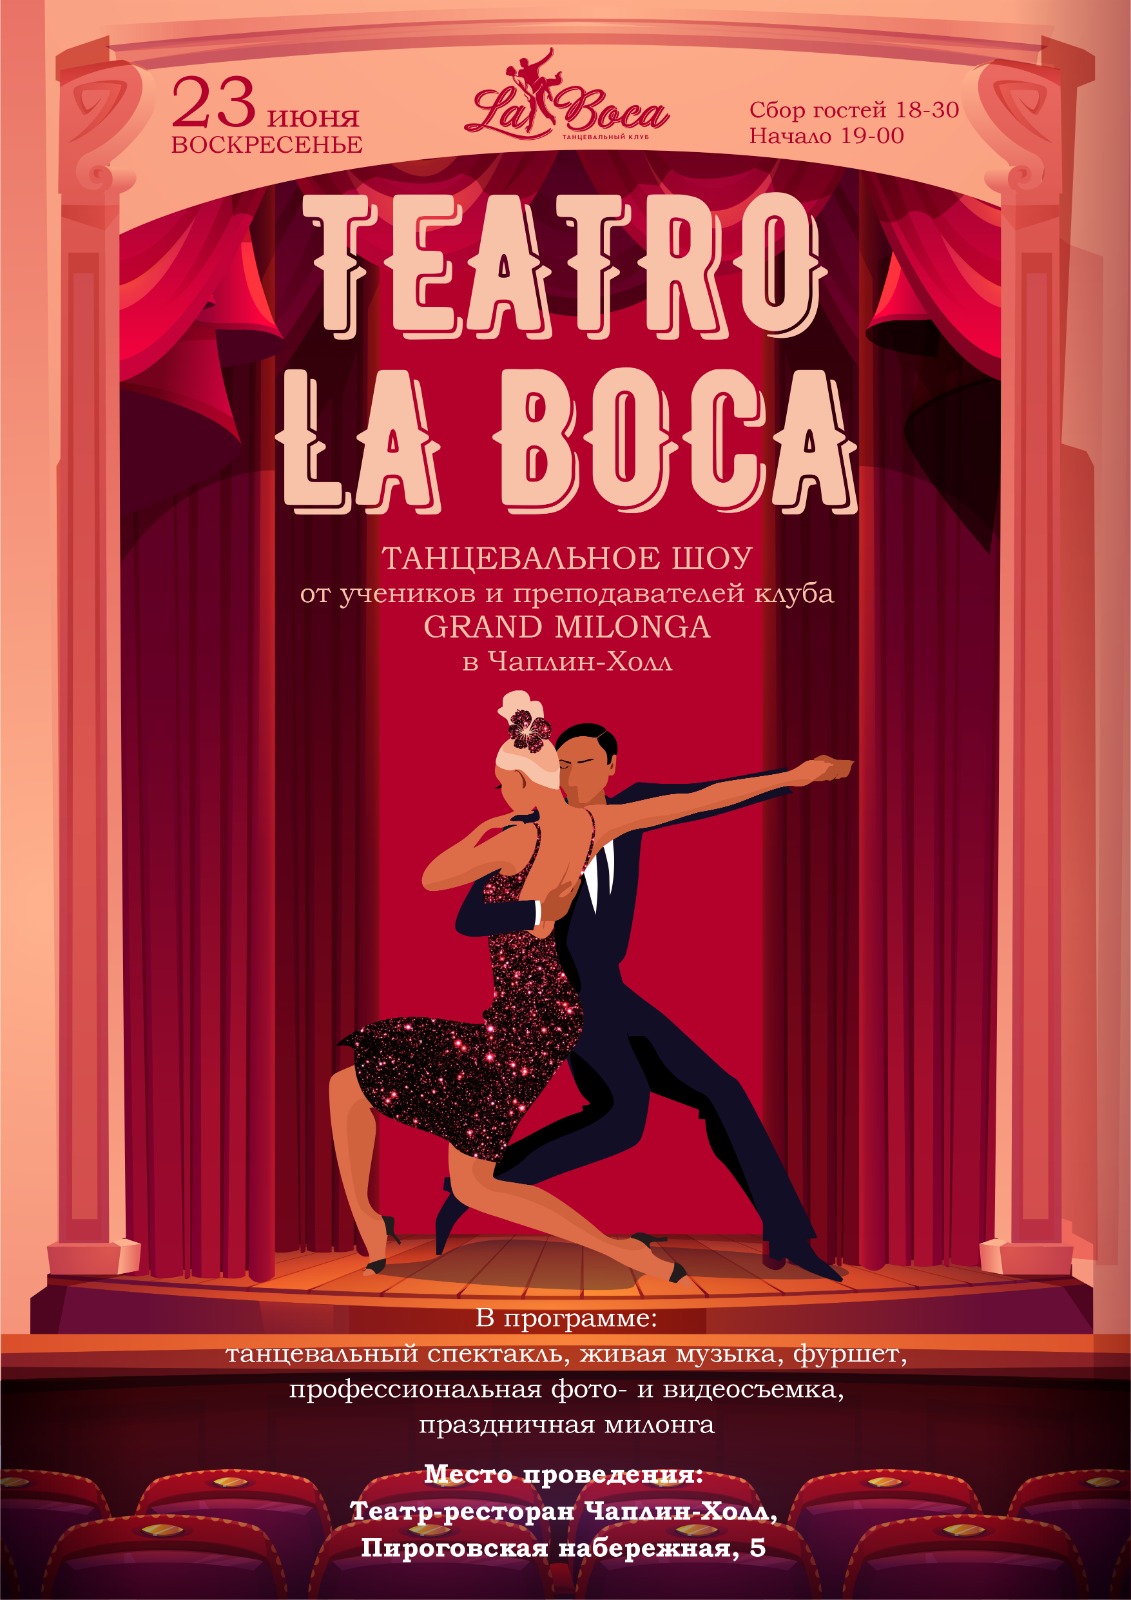 Teatro La Boca